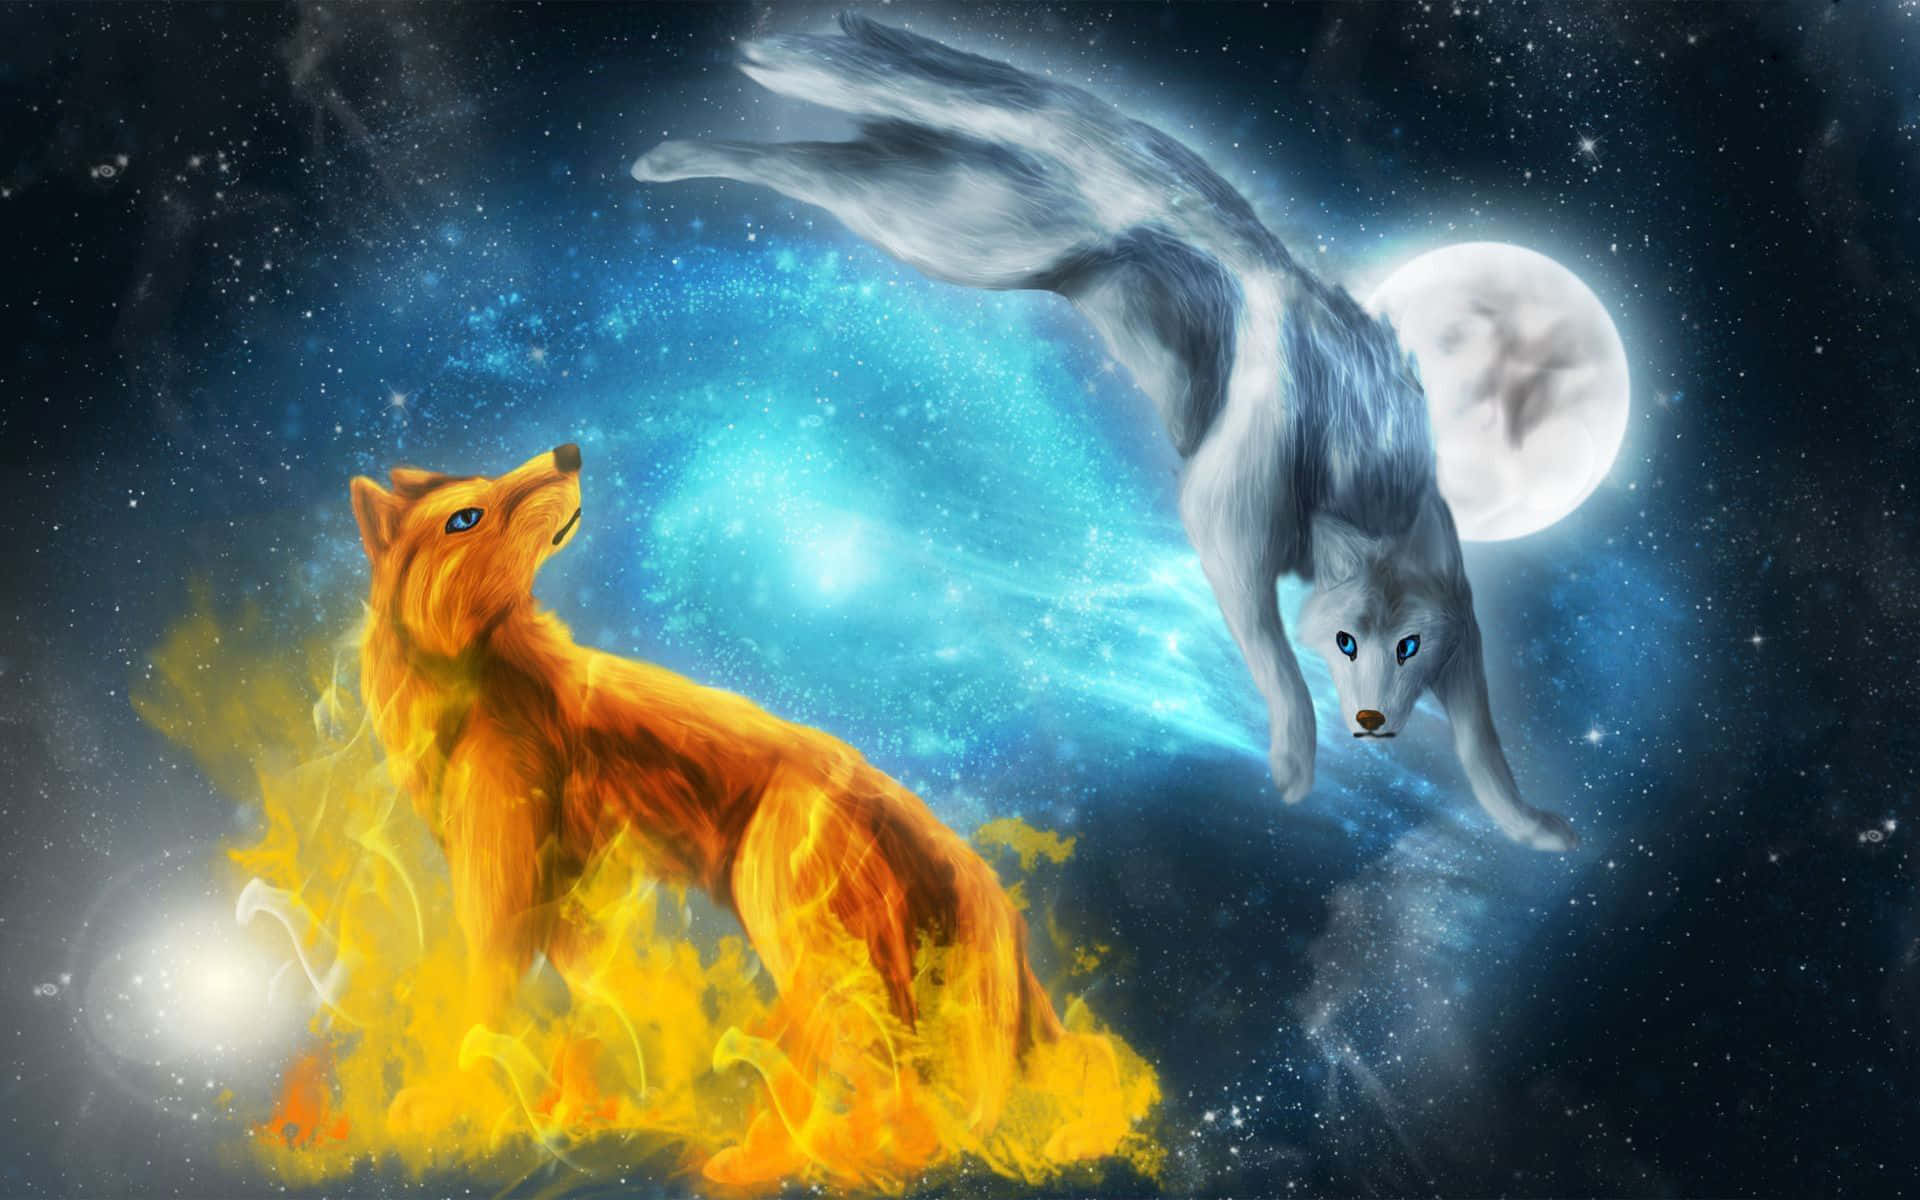 Image  "Mystical Galaxy Wolf"